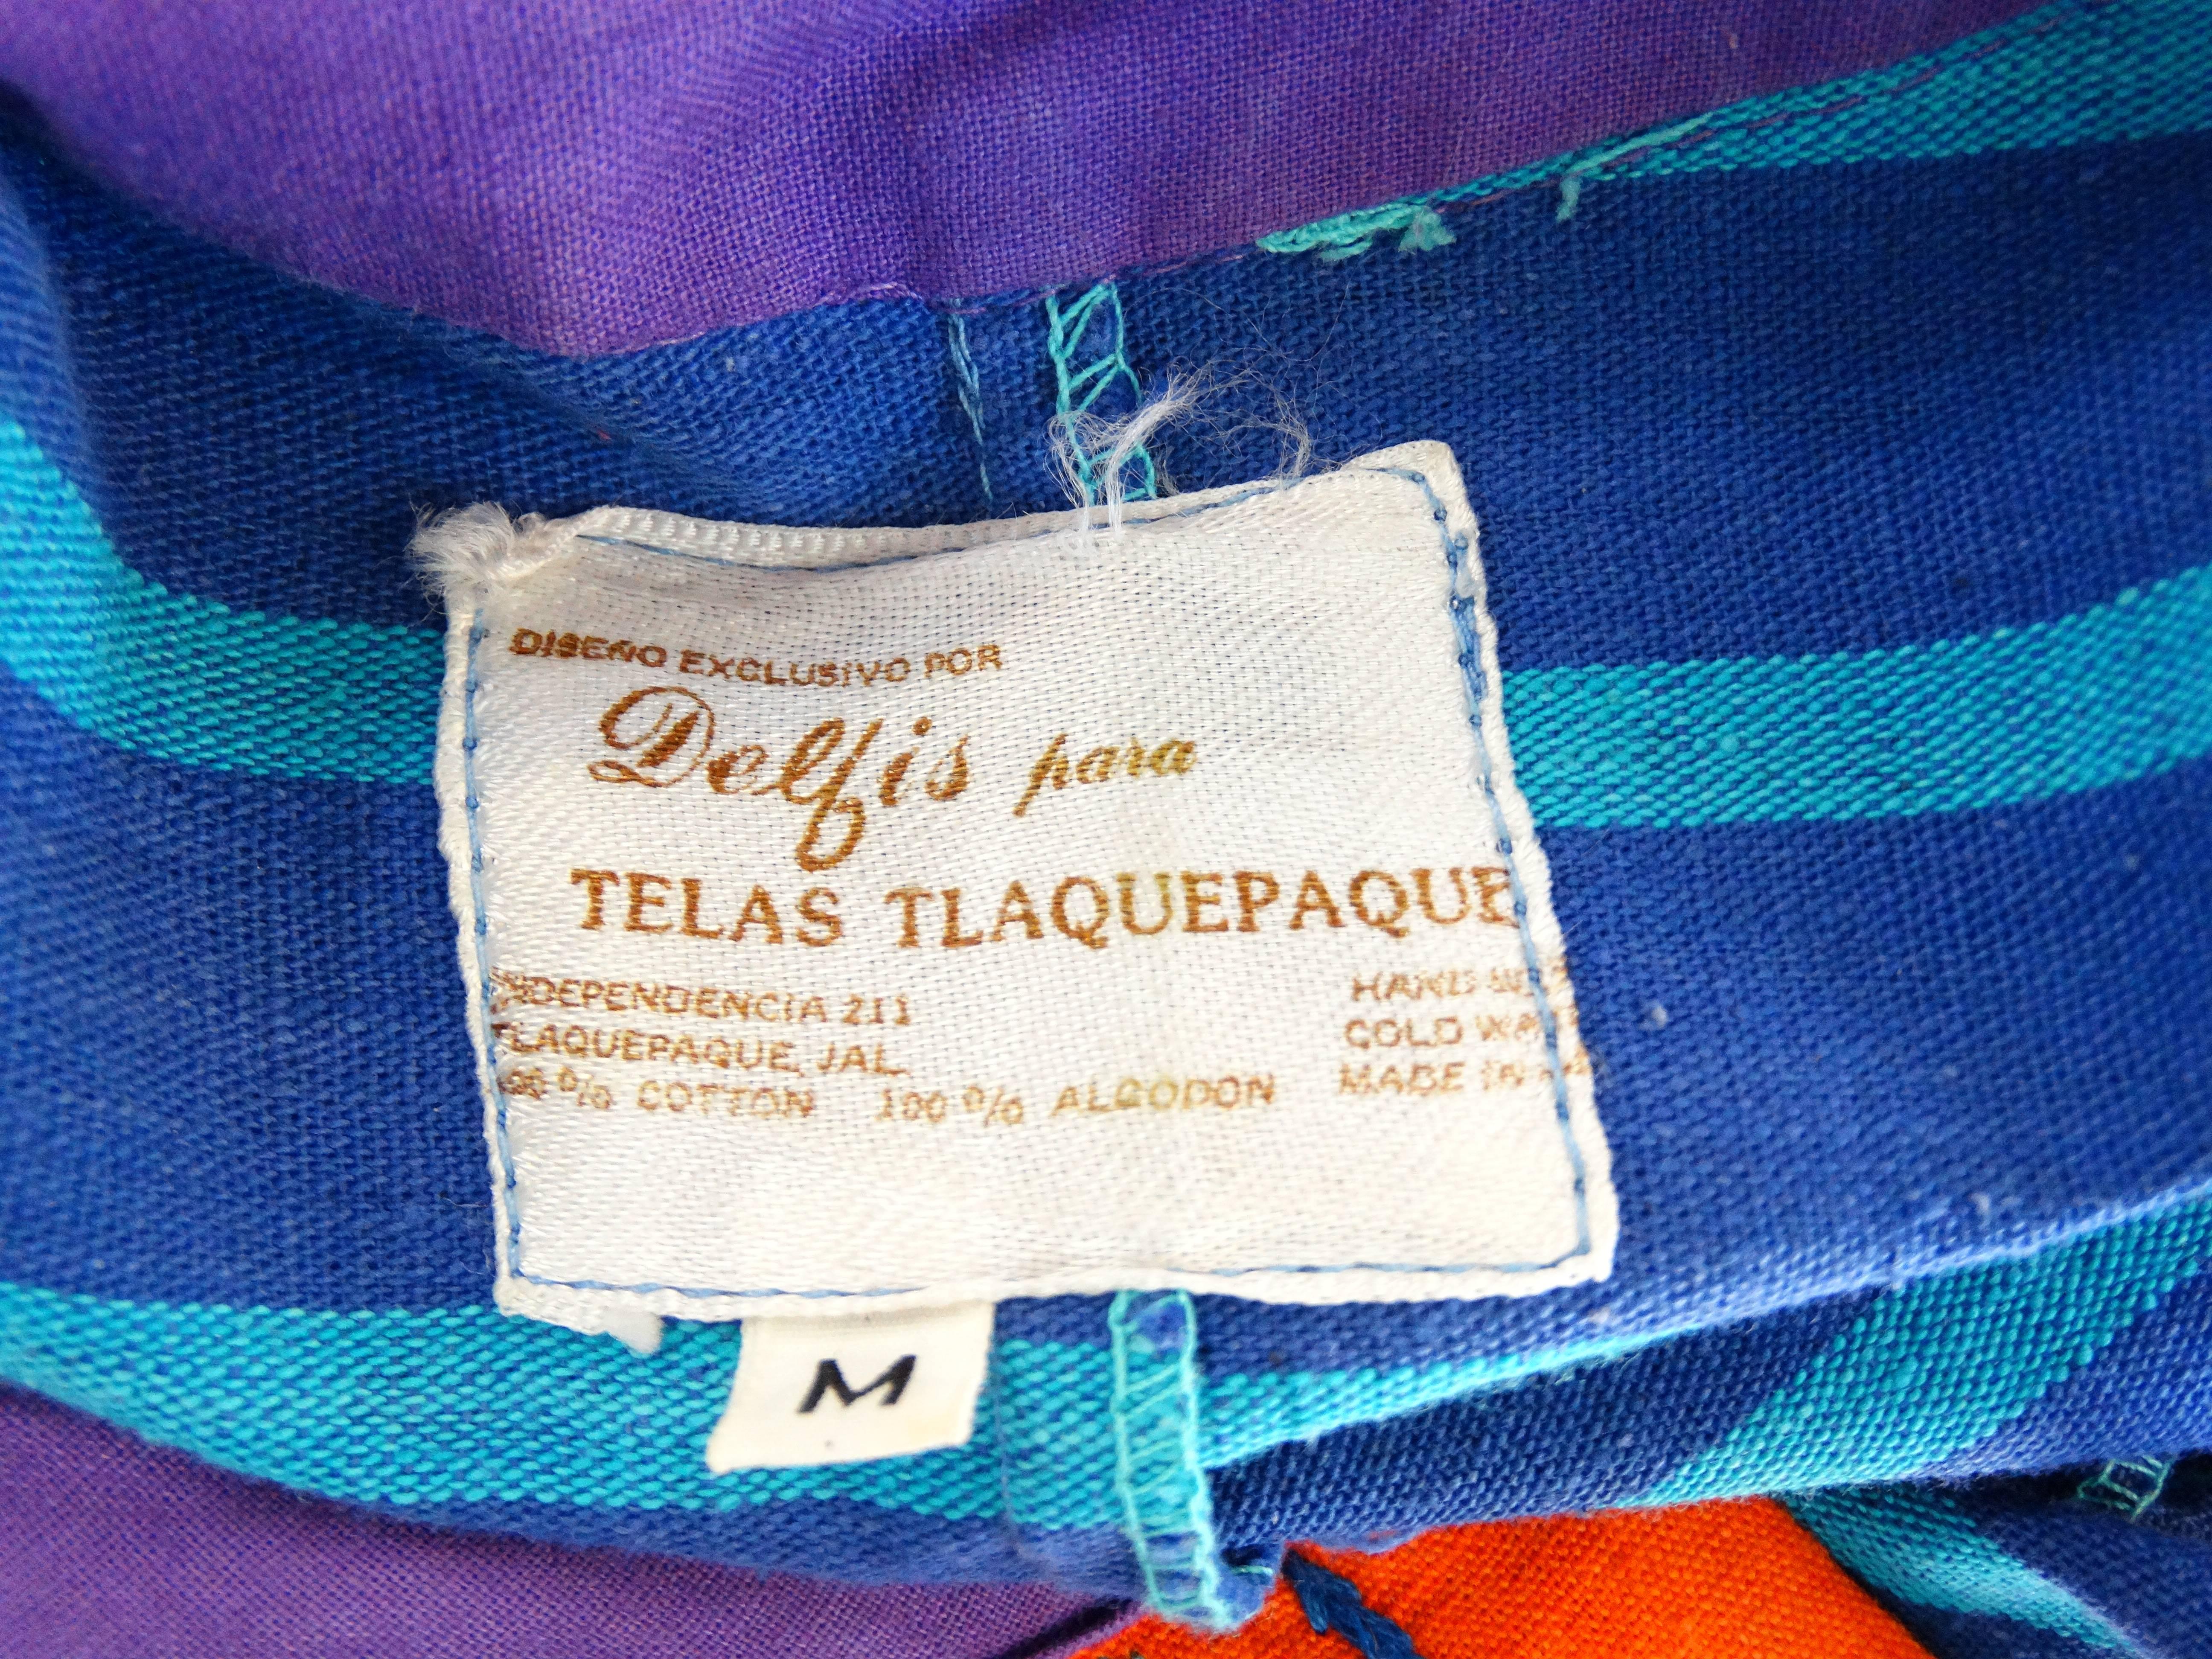 1970s Delfis Para Telas Tlaquepaque Mexican Dress 2